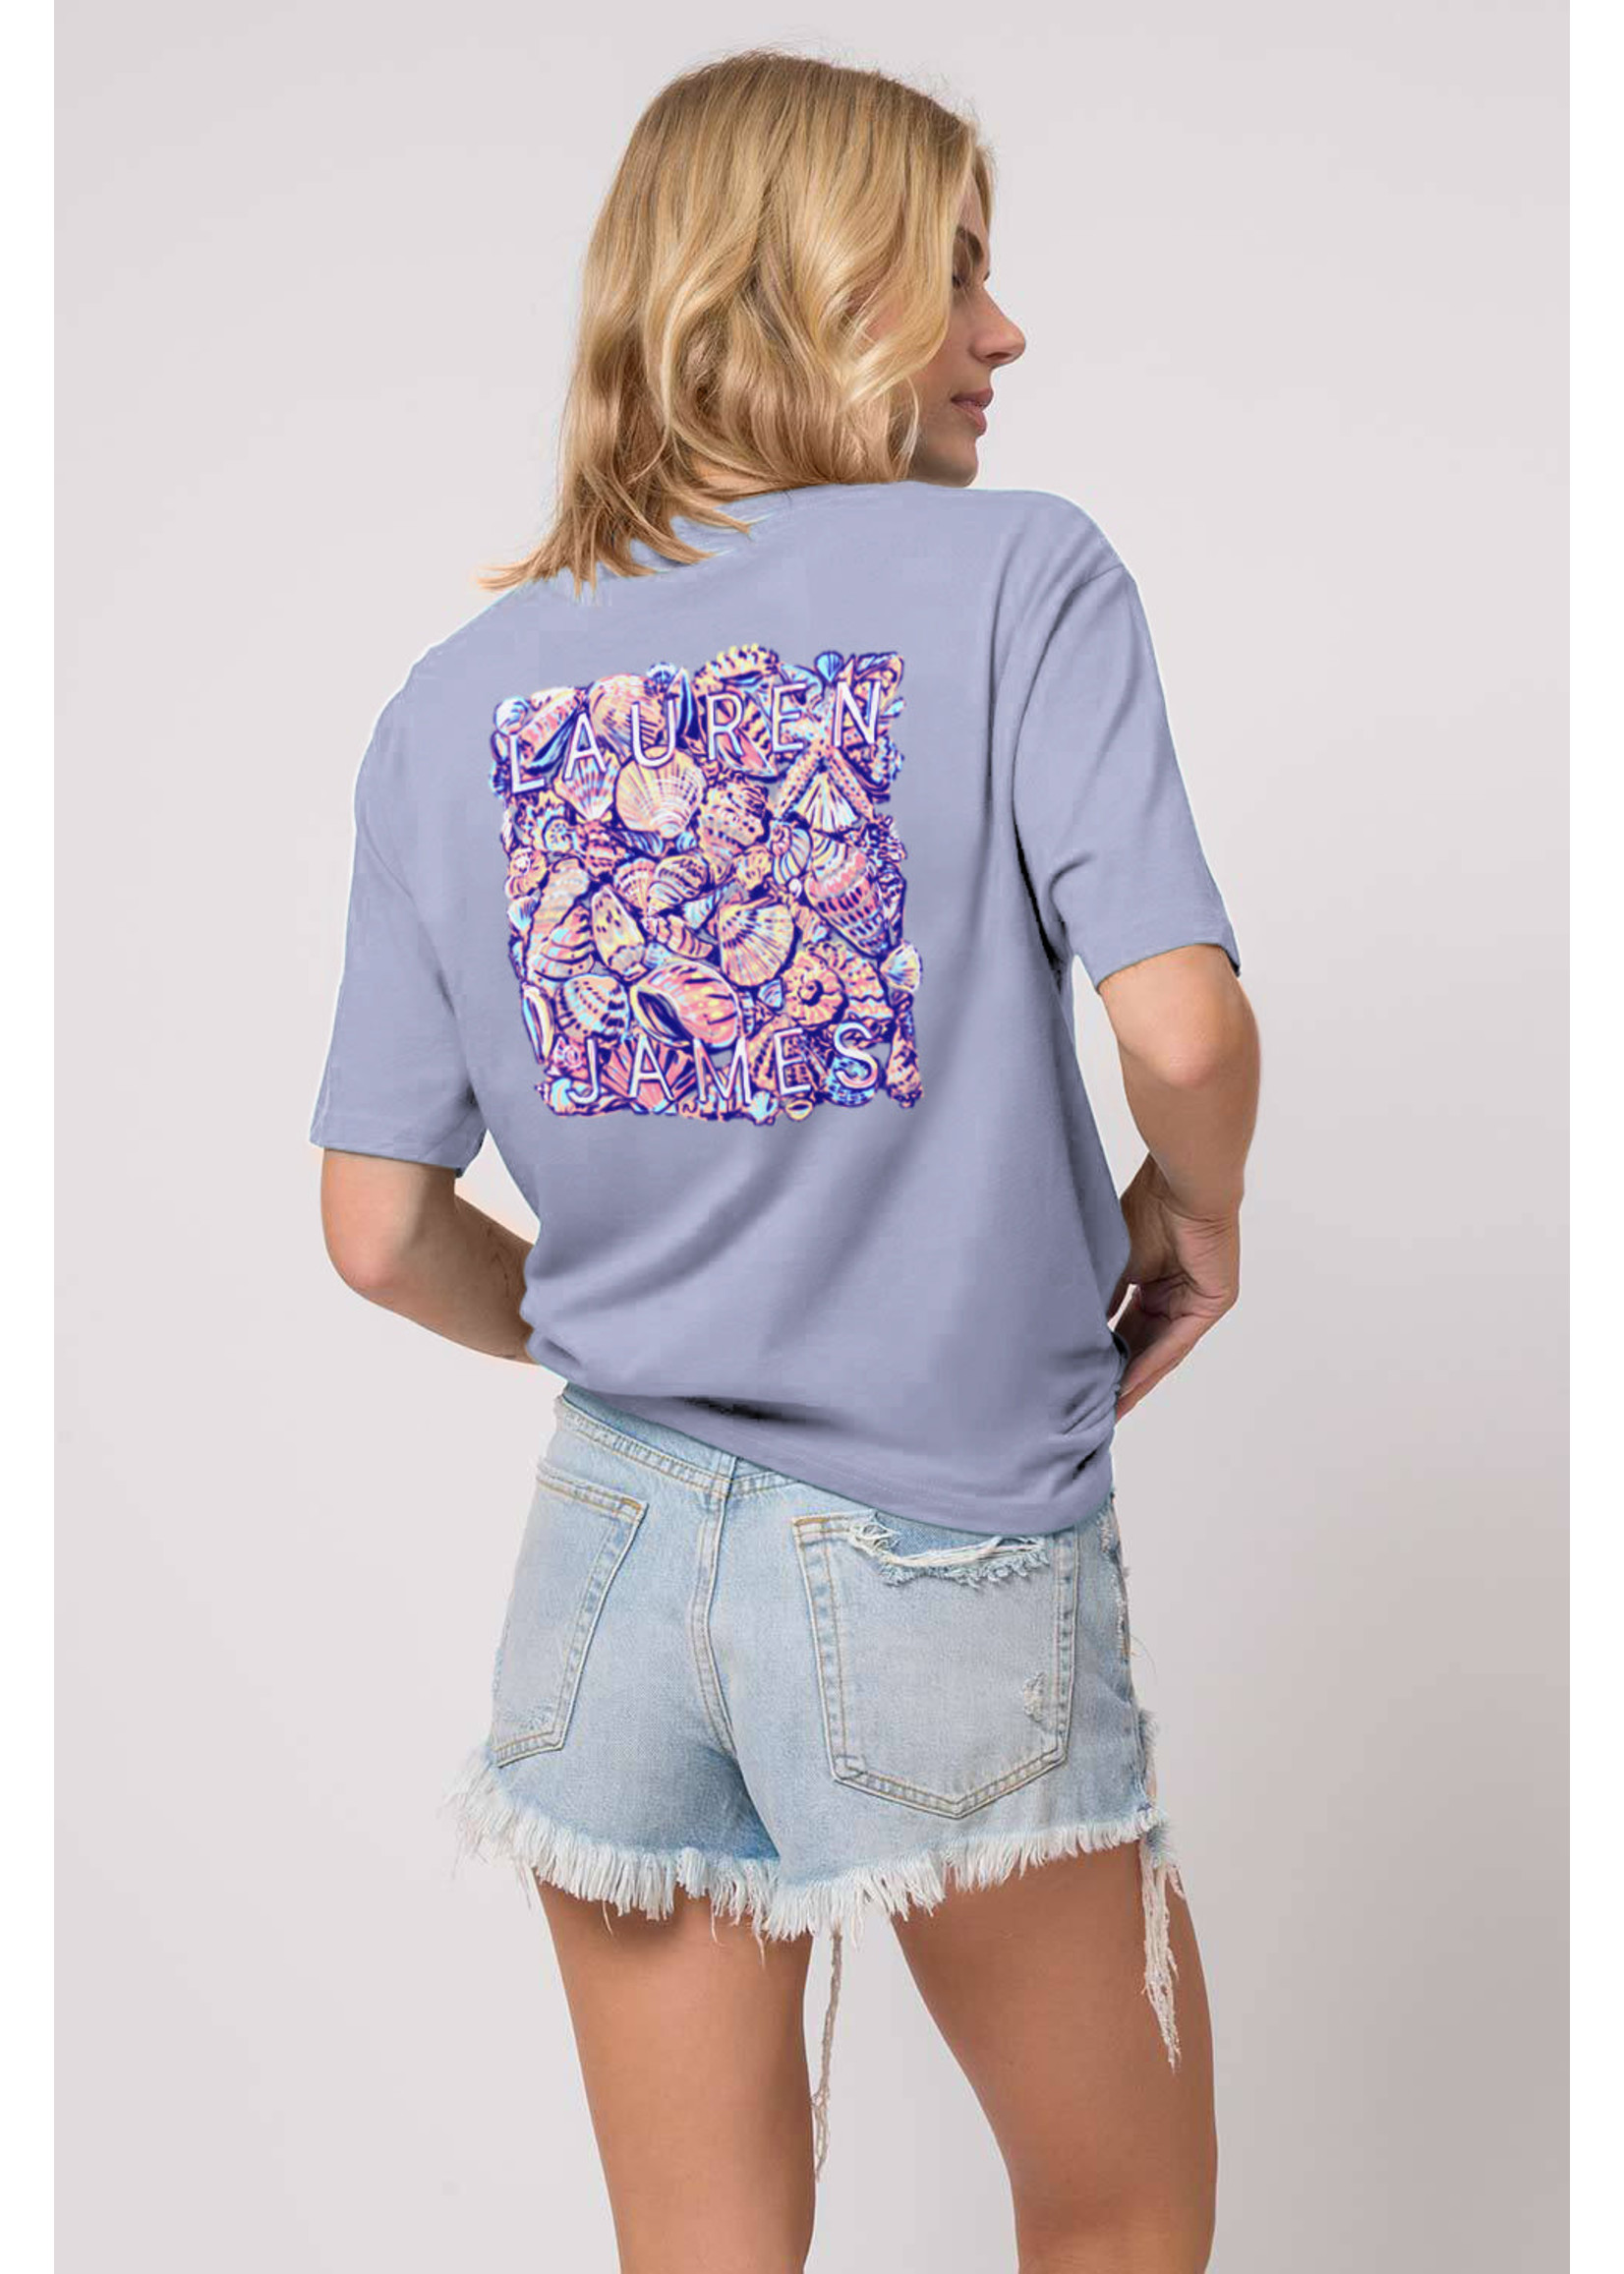 Lauren James Colorful Shells T-shirt - Lilac